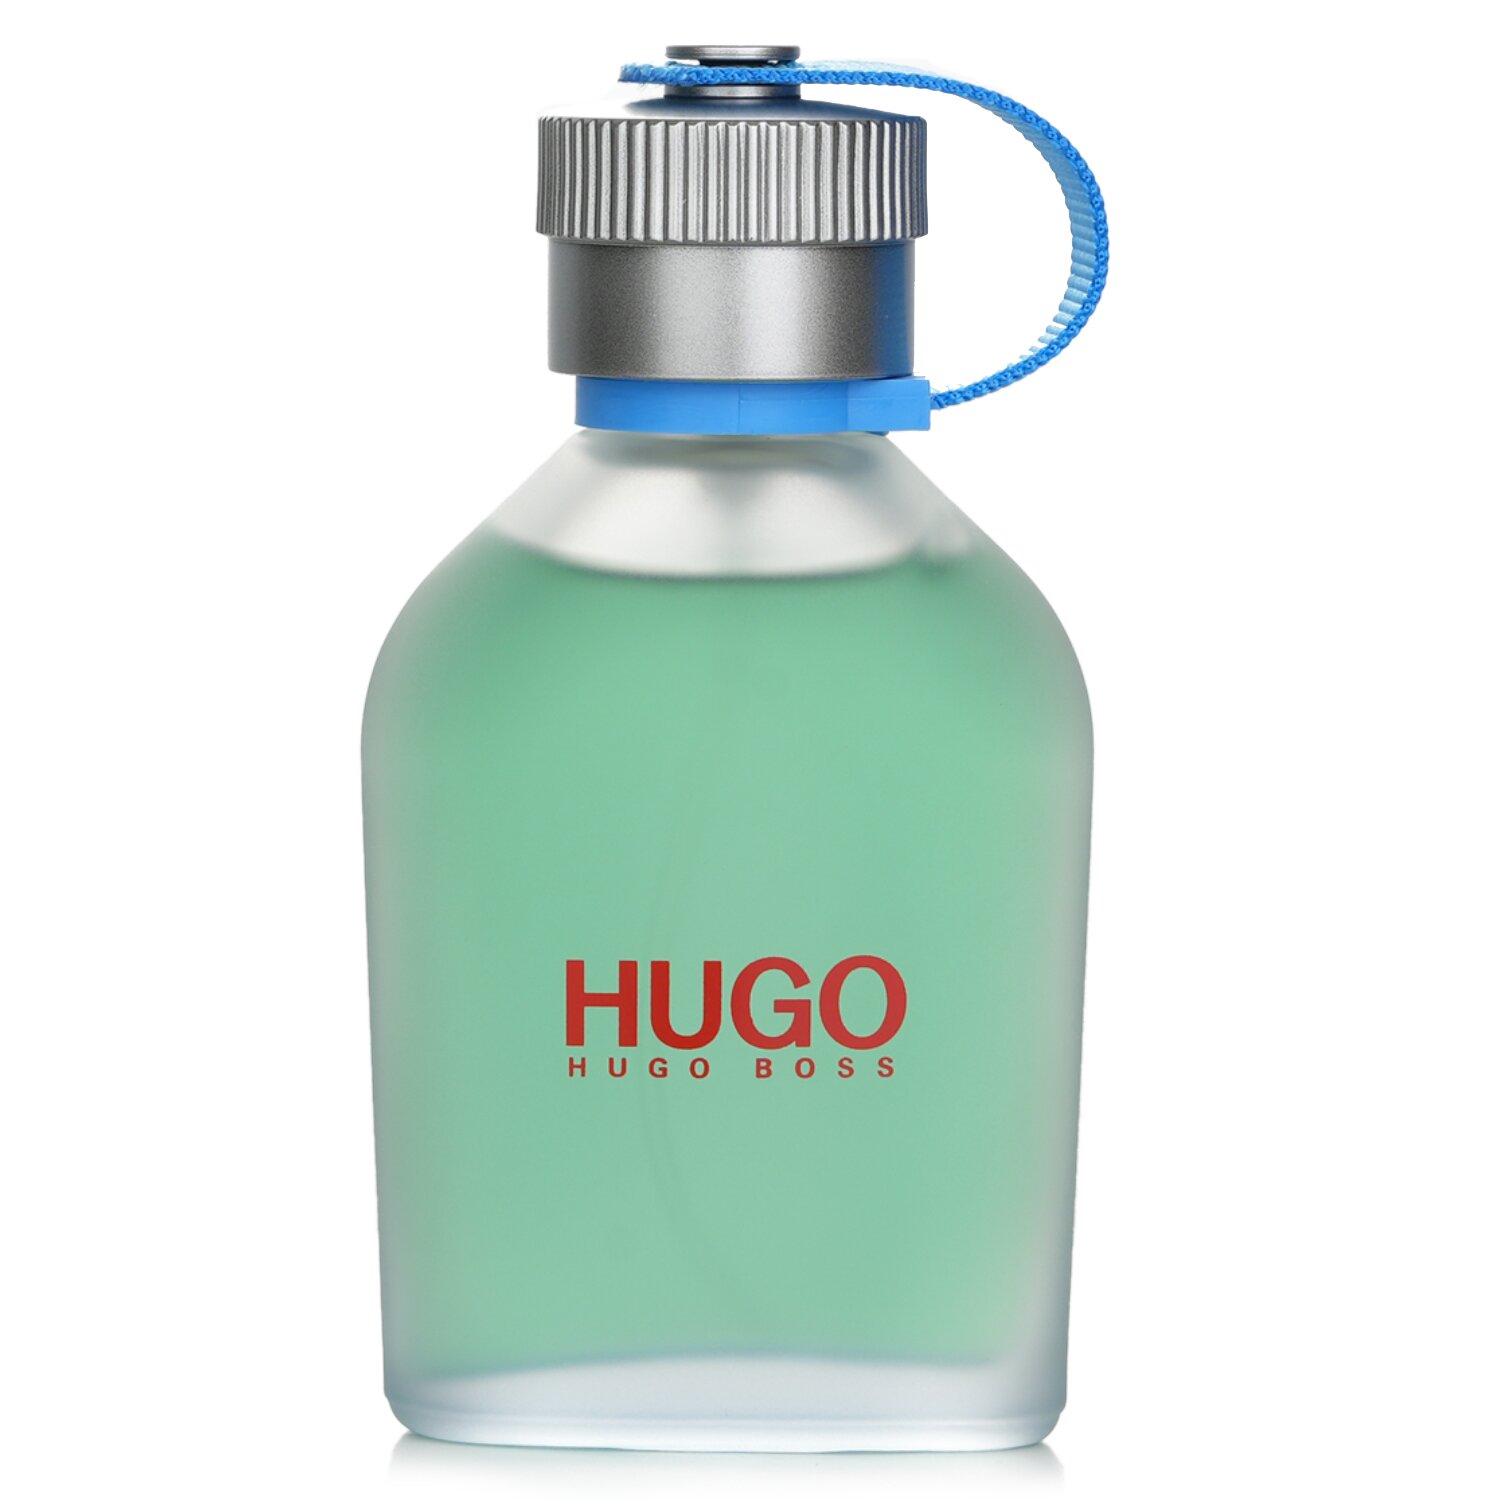 Hugo Boss 雨果博斯 慢活海洋調芳香水 75ml/2.56oz